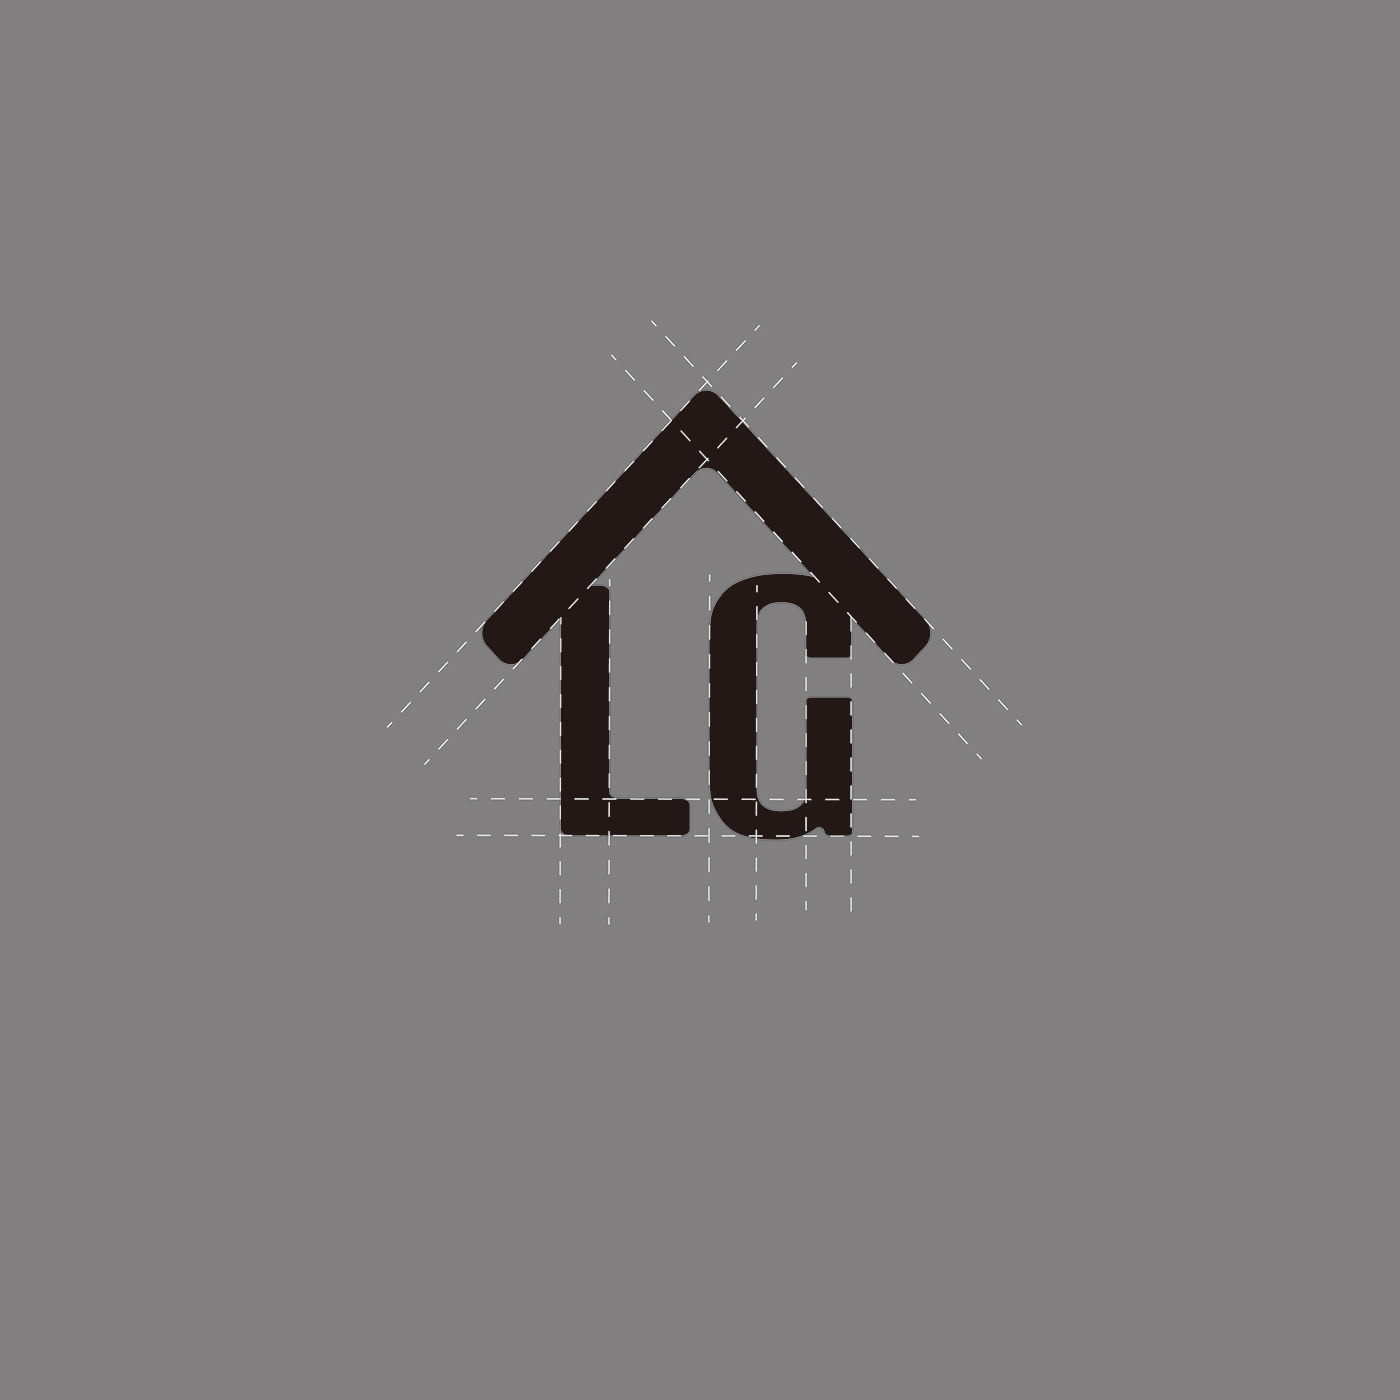 Multipurpose studio logo Logo Design identity Brand Design house home lg oldhouse